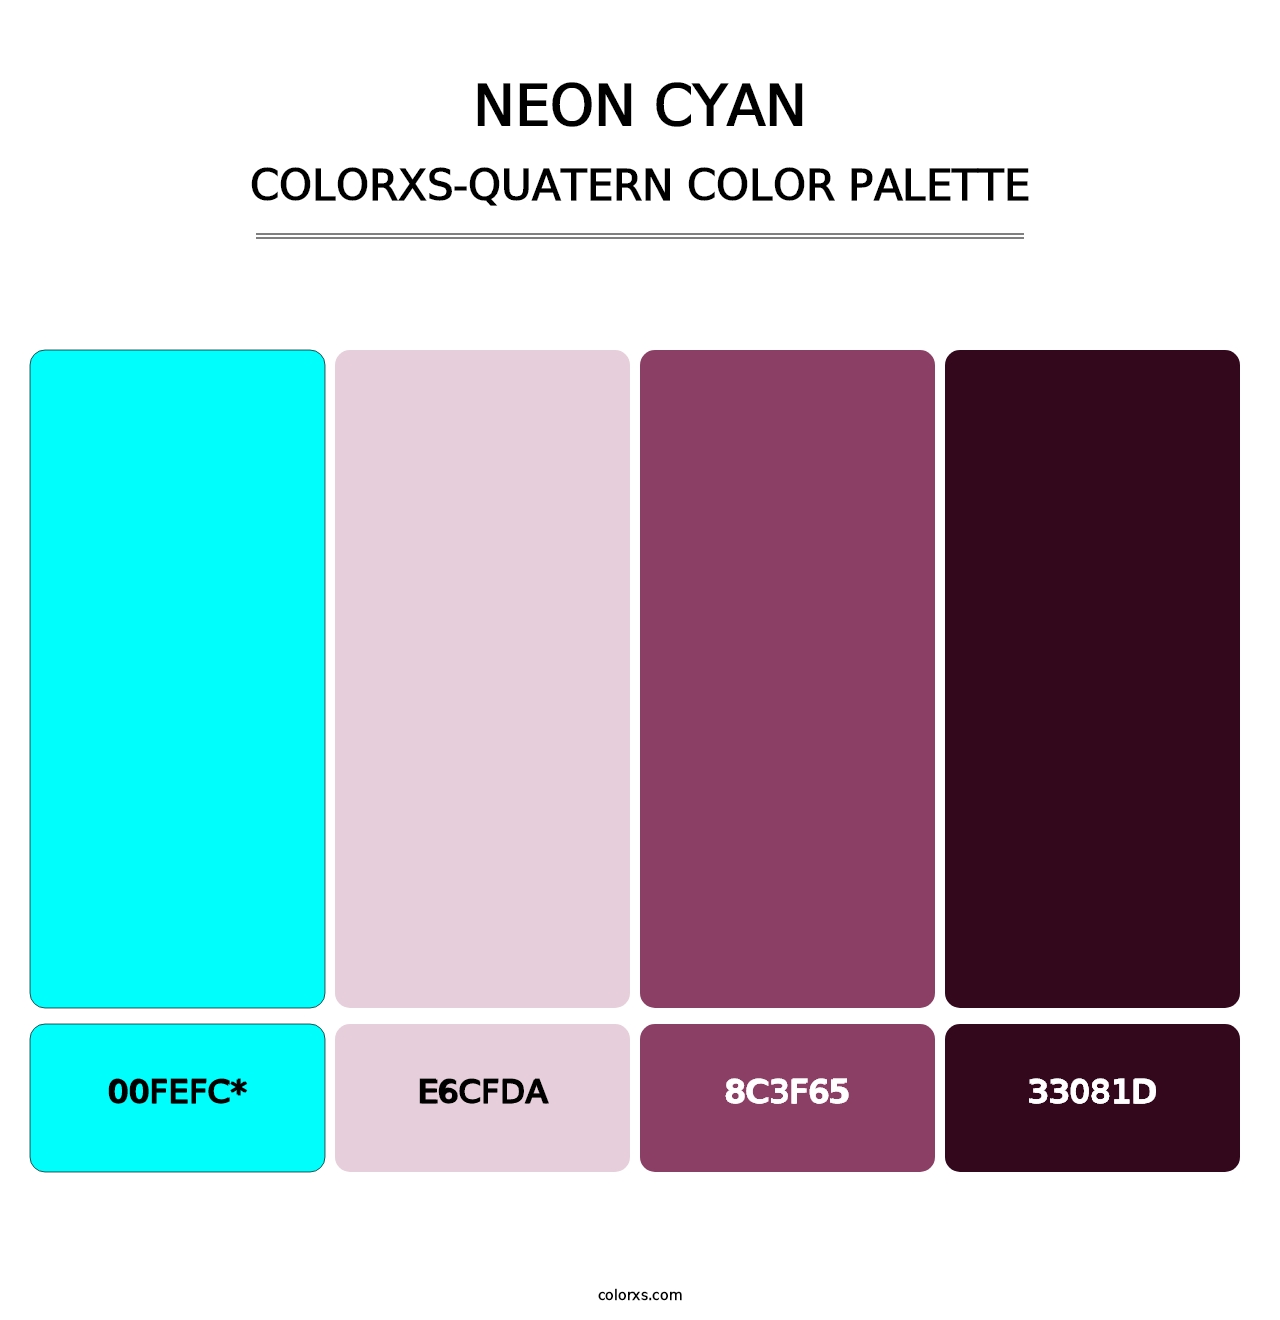 Neon Cyan - Colorxs Quatern Palette